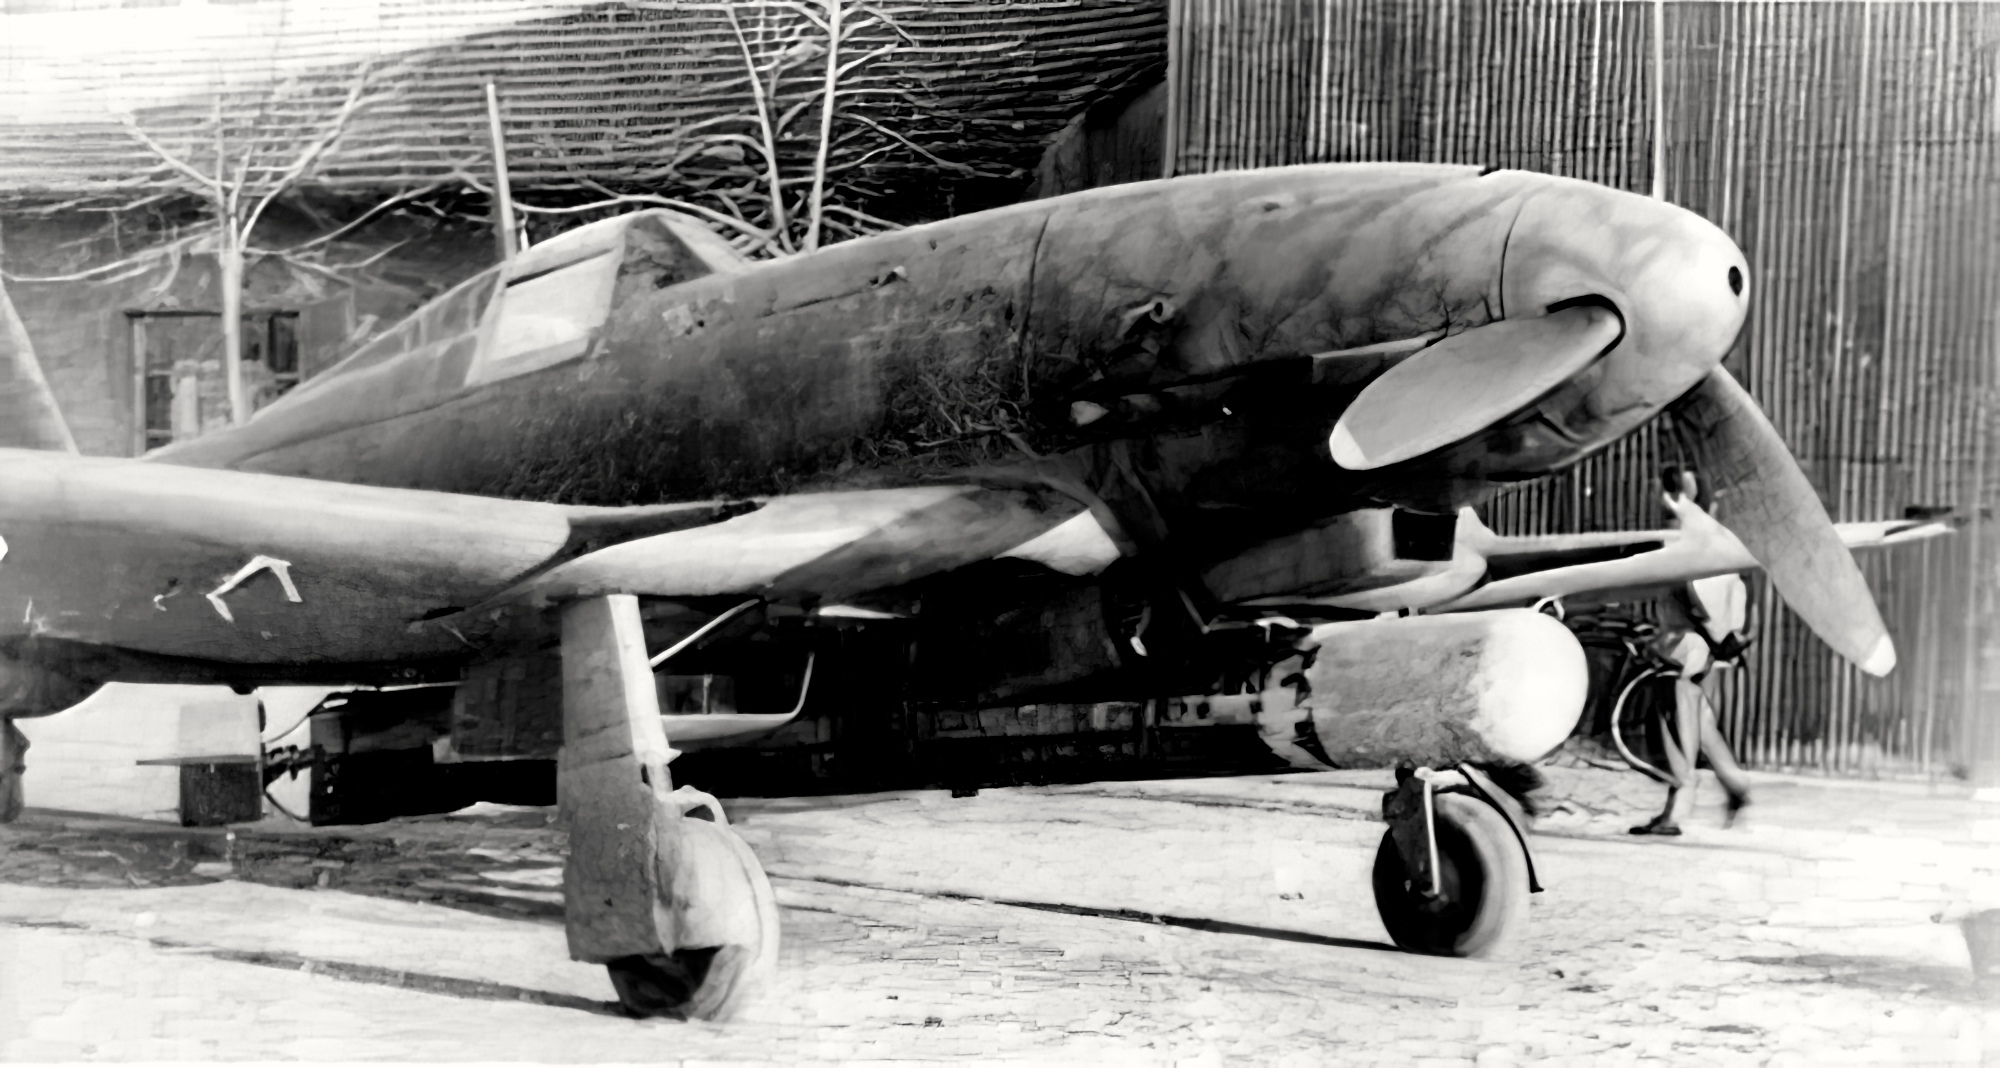 ANR Aeronautica Nazionale Repubblicana Fiat G55S Centauro S prototype tested at Varez March 1945 01